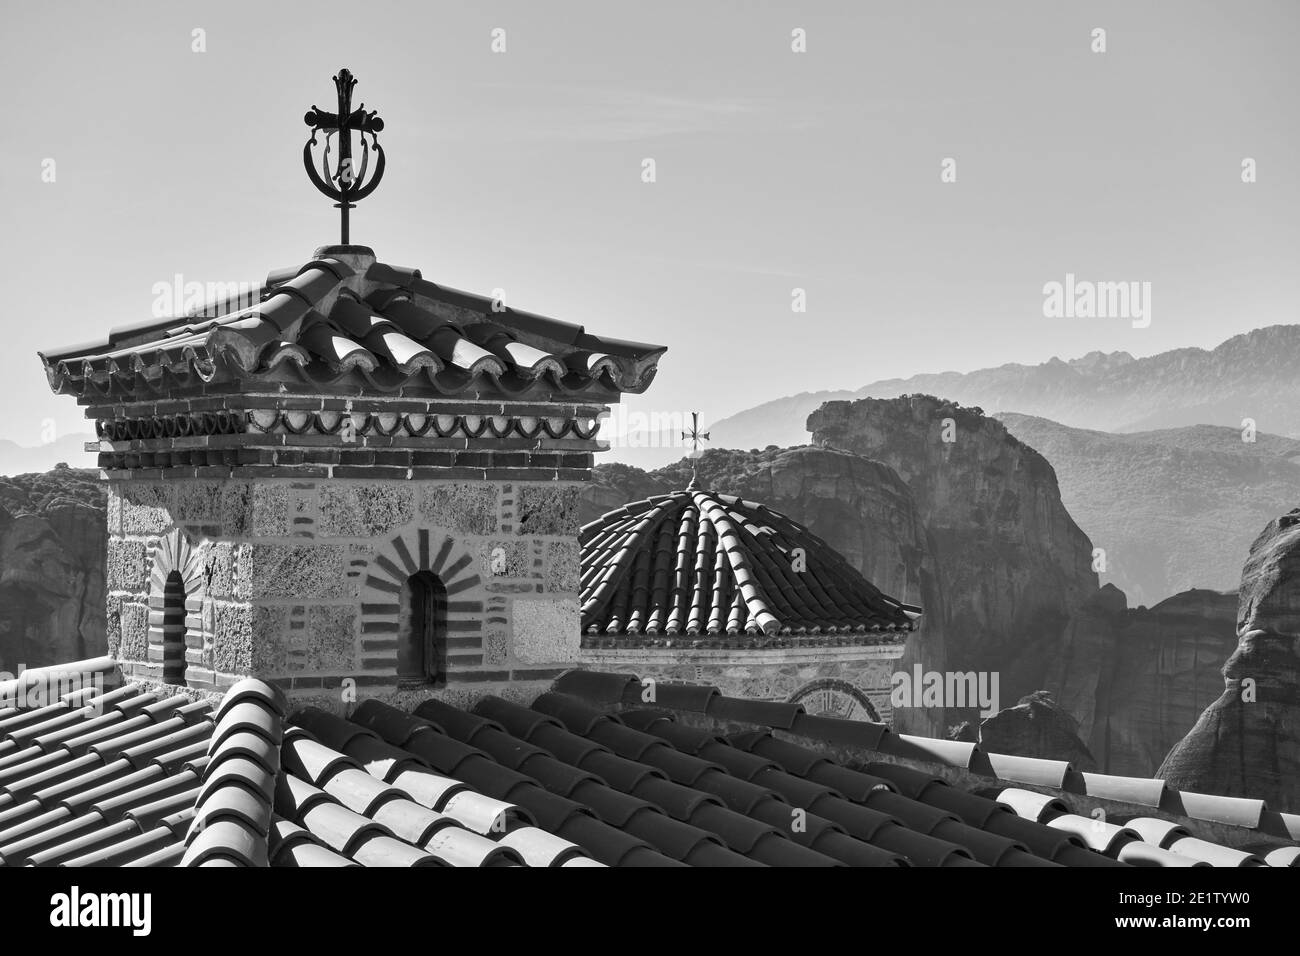 Dômes avec des croix de Varlaam monastère orthodoxe et des roches de Meteora en arrière-plan, la Grèce. Paysage grec noir et blanc Banque D'Images